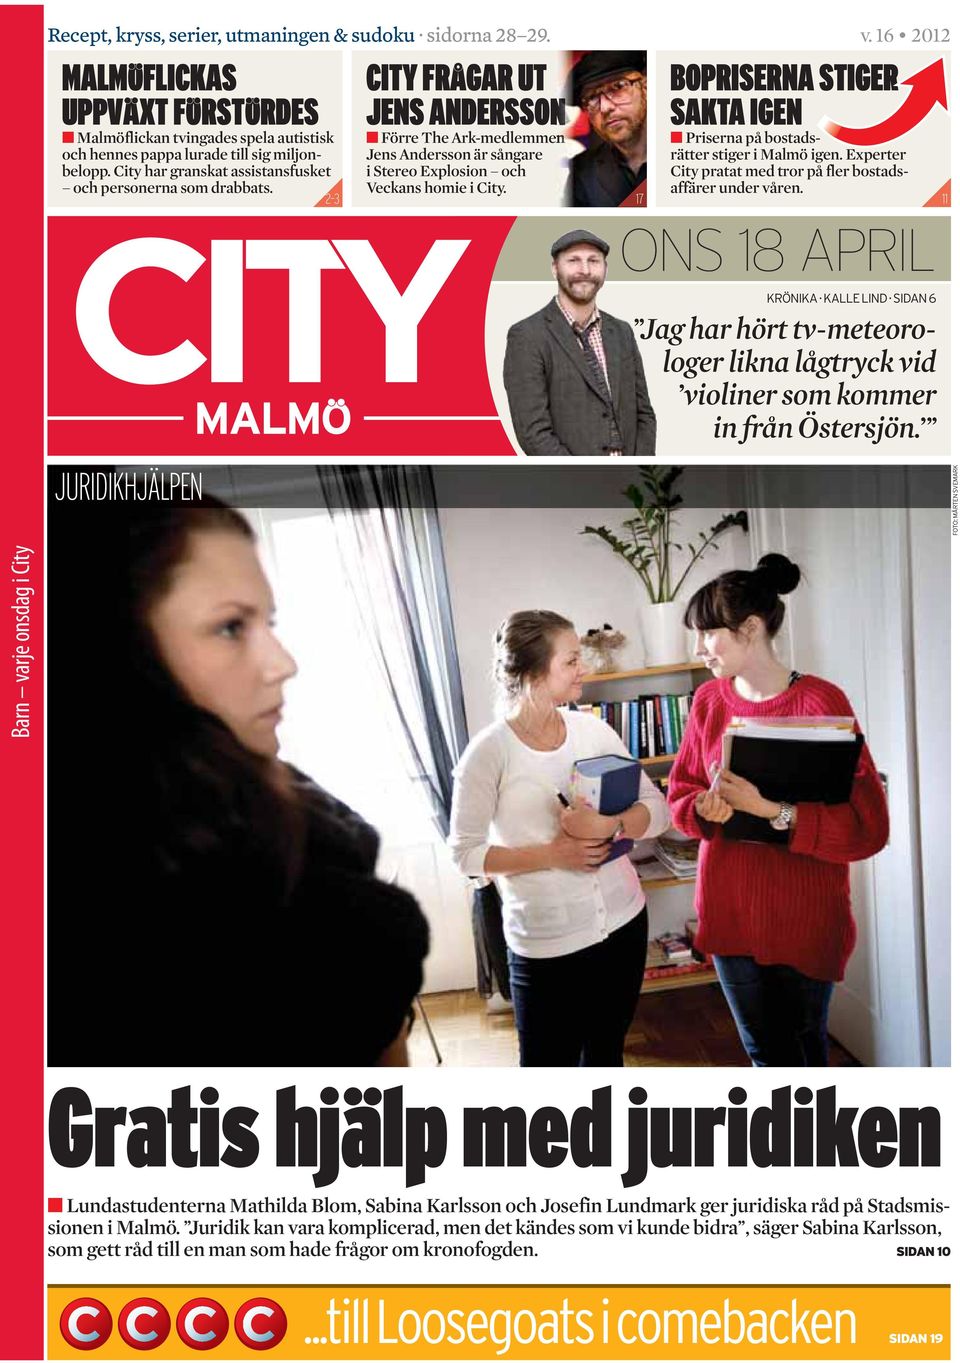 17 BOPRISERNA STIGER SAKTA IGEN Priserna på bostads - rätter stiger i Malmö igen. Experter City pratat med tror på fler bostadsaffärer under våren. 11 JURIDIKHJÄLPEN ONS 18 APRIL KRÖNIKA. KALLE LIND.